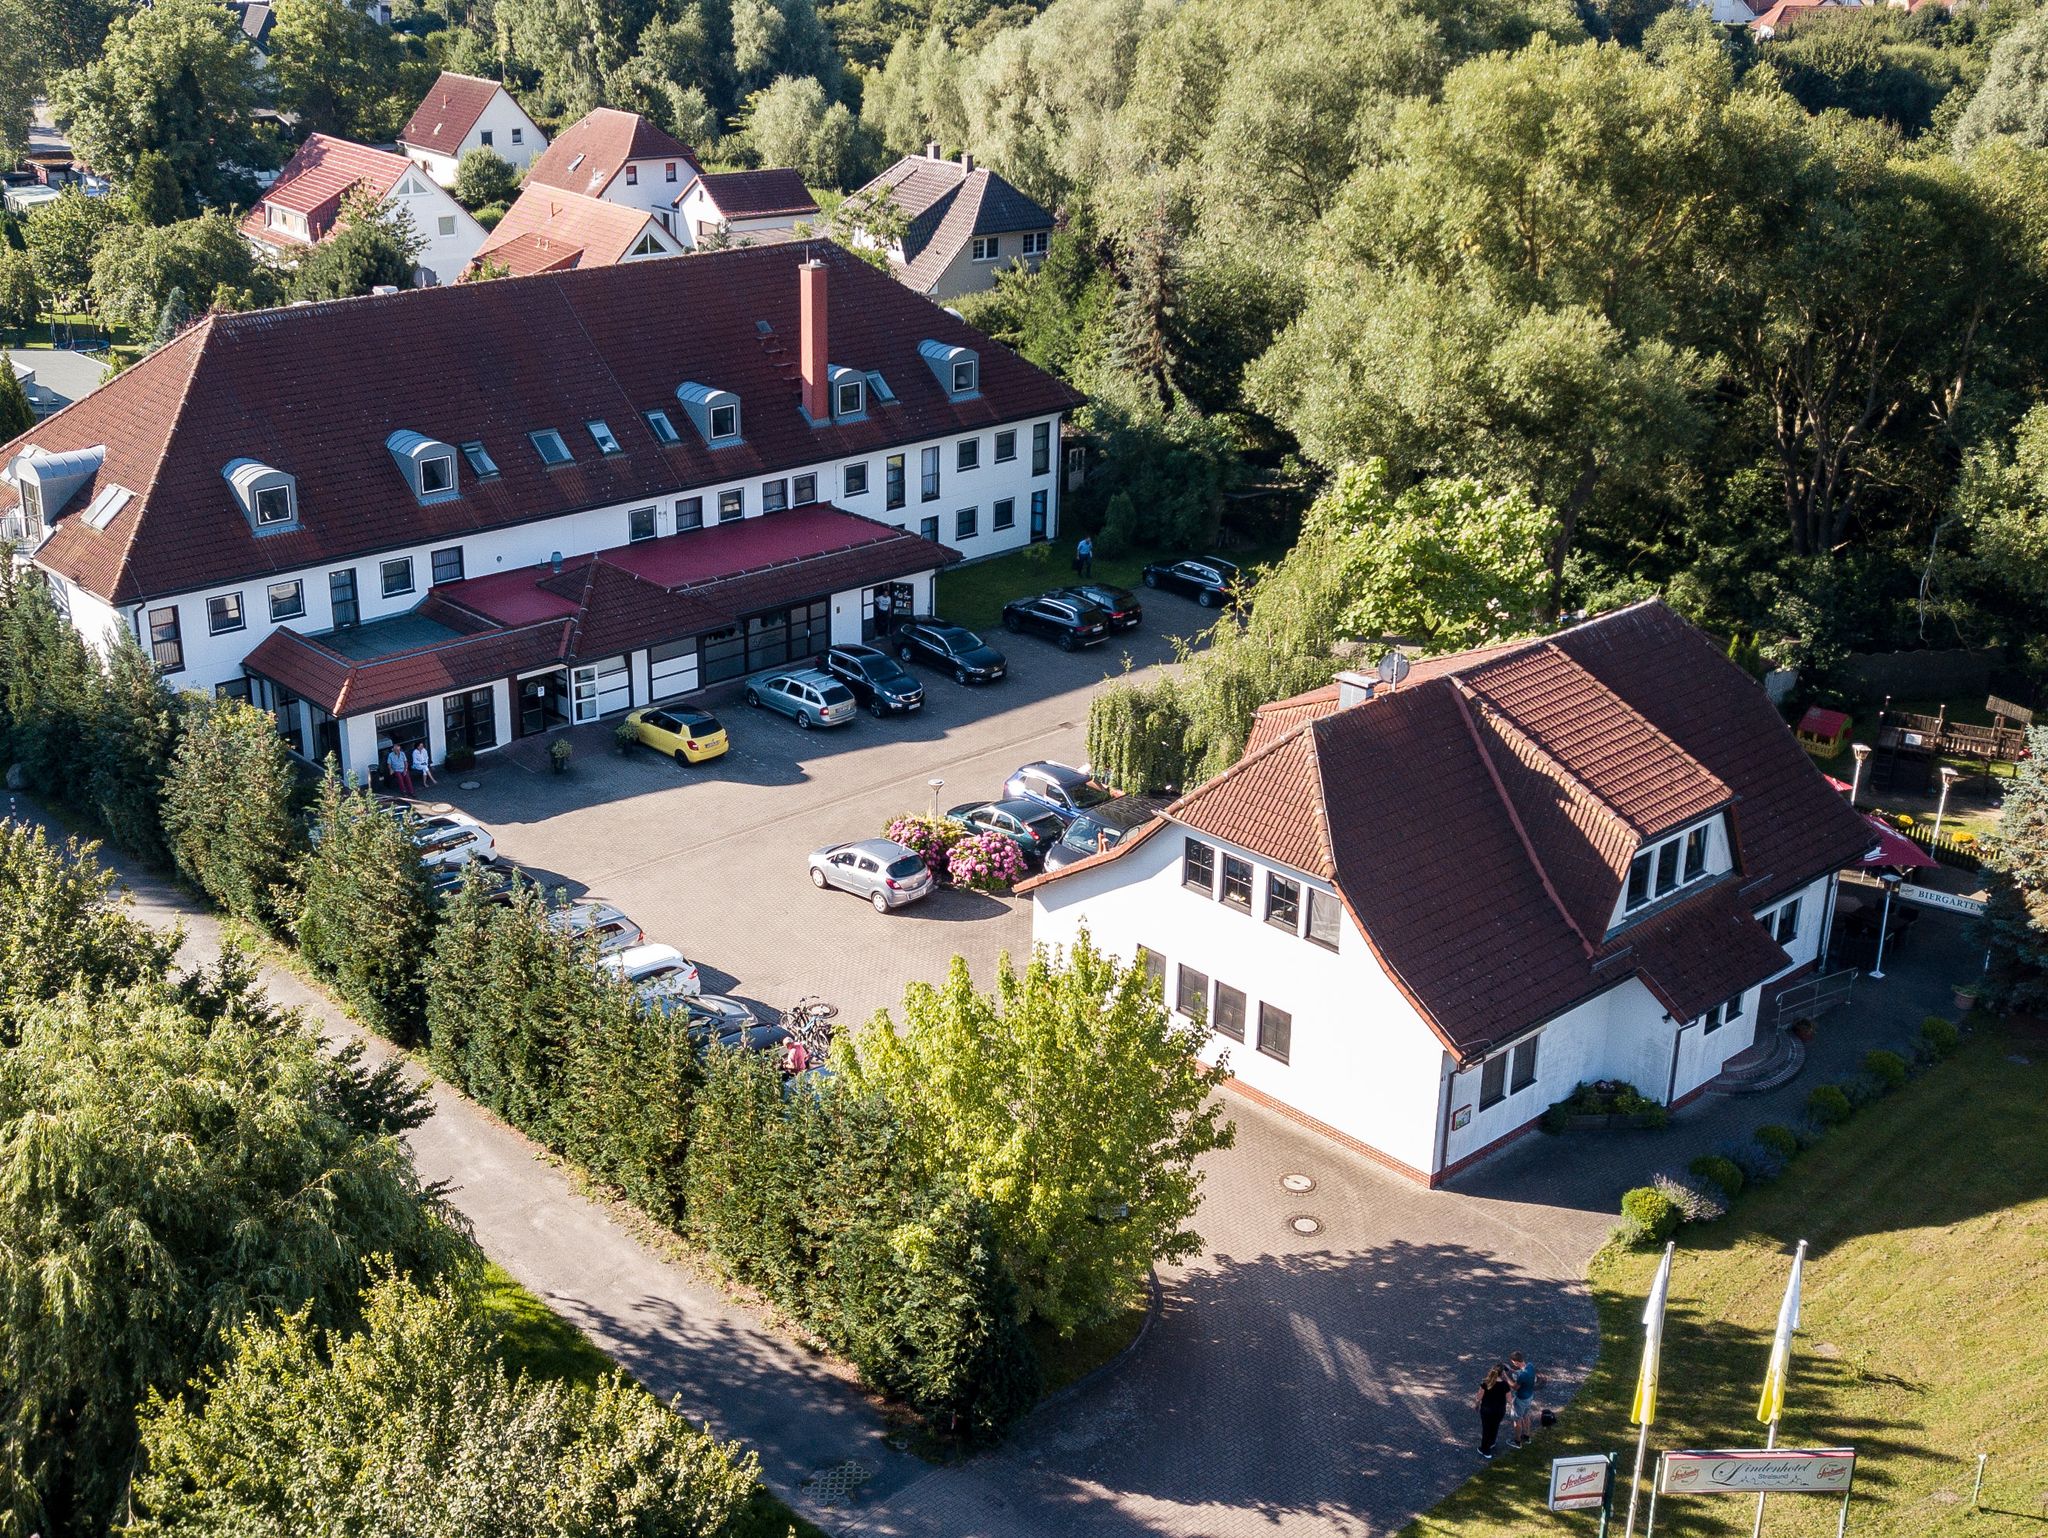 Hotel Dänischer Hof Altenholz by Tulip Inn